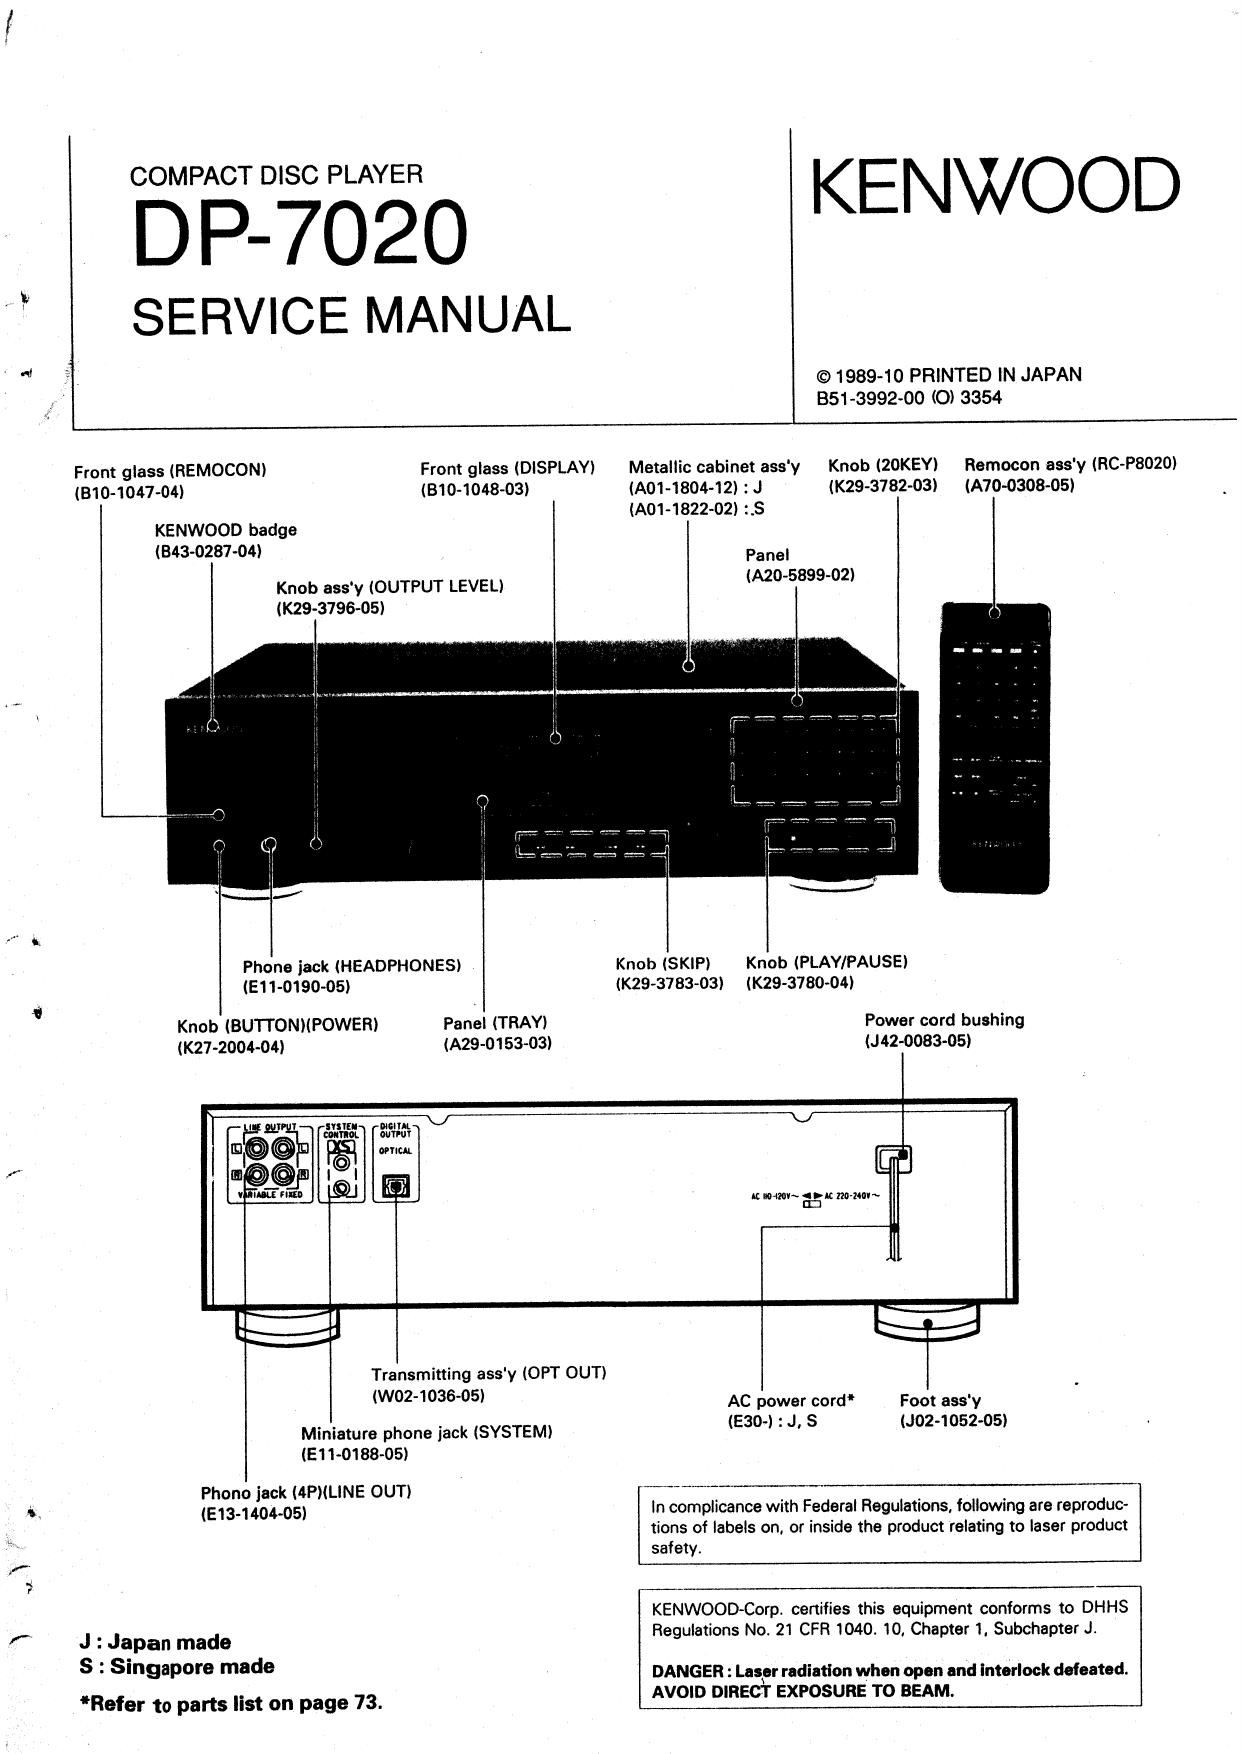 Kenwood DP 7020 Service Manual